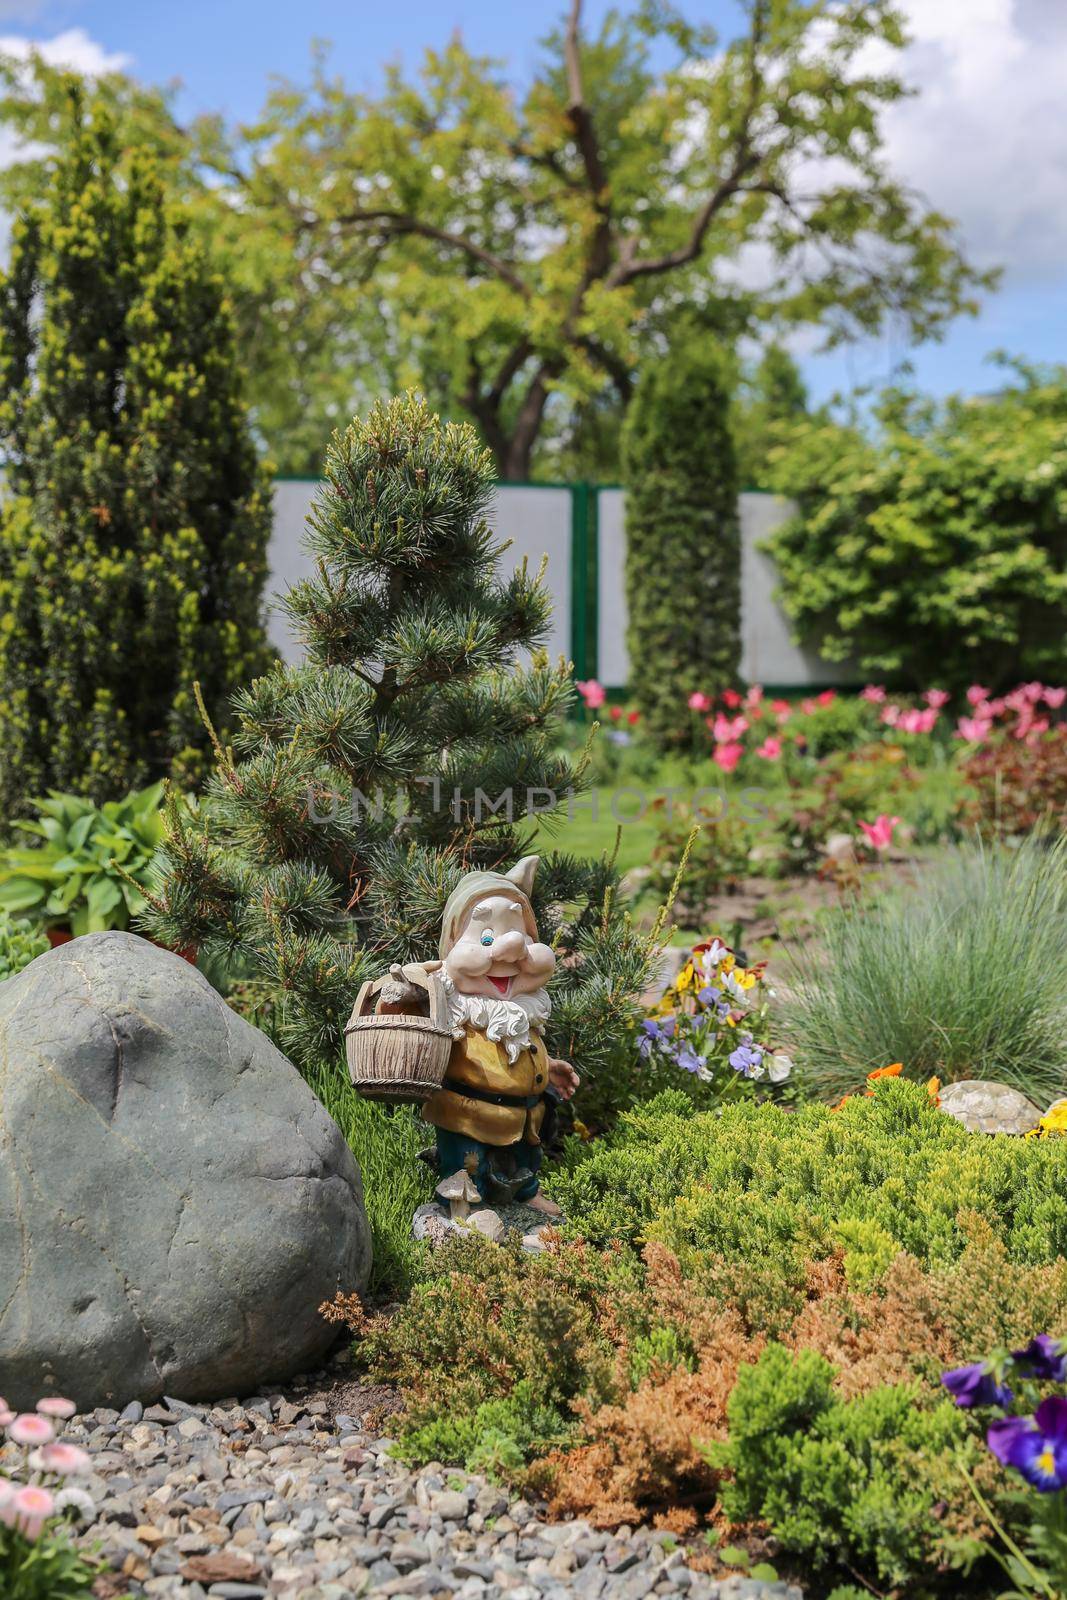 Garden gnome by Mariakray